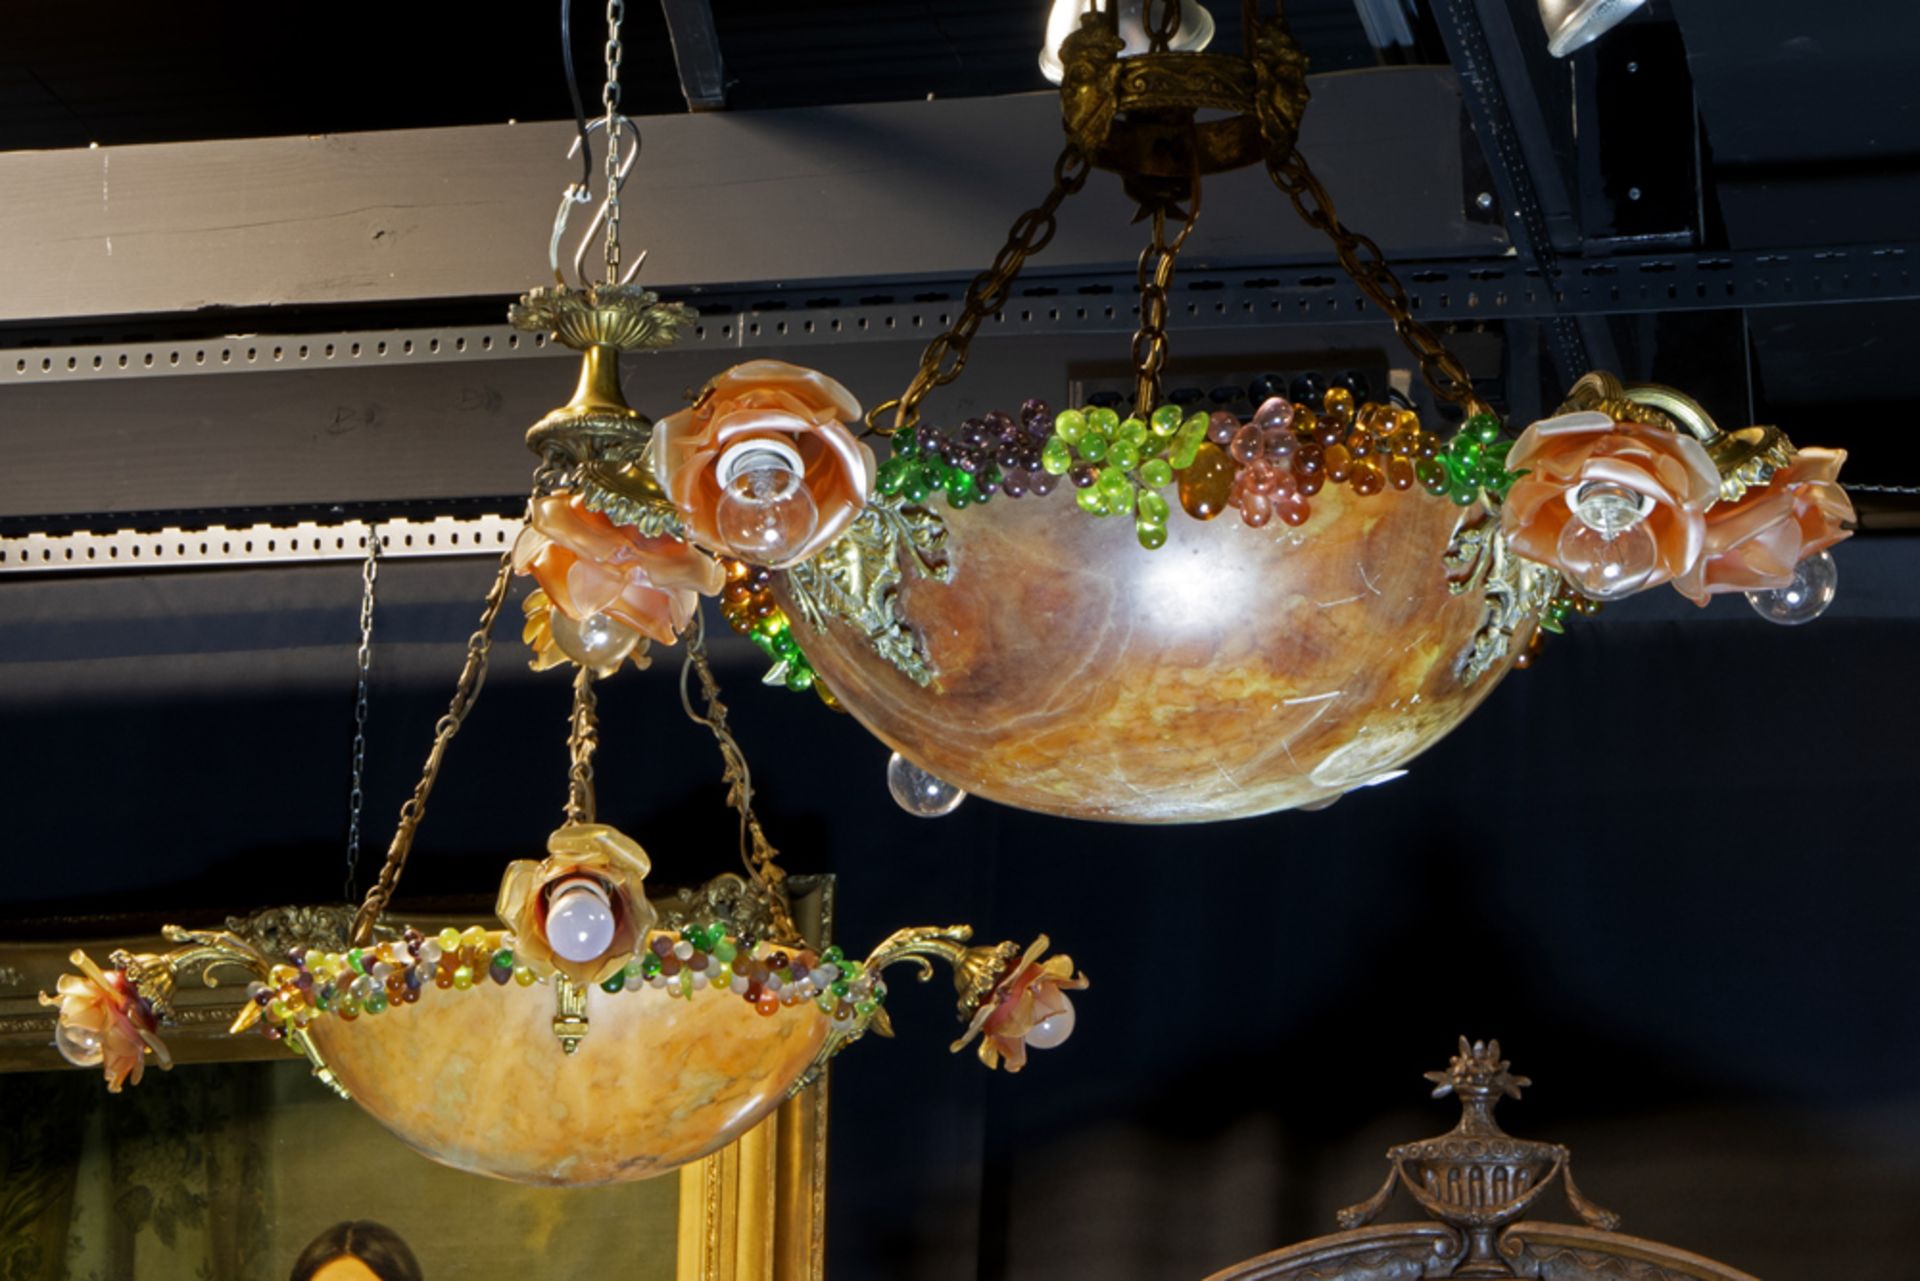 pair of 1920's chandeliers with a bowl in alabaster || Twee lusters van de jaren 1920 met coupe in